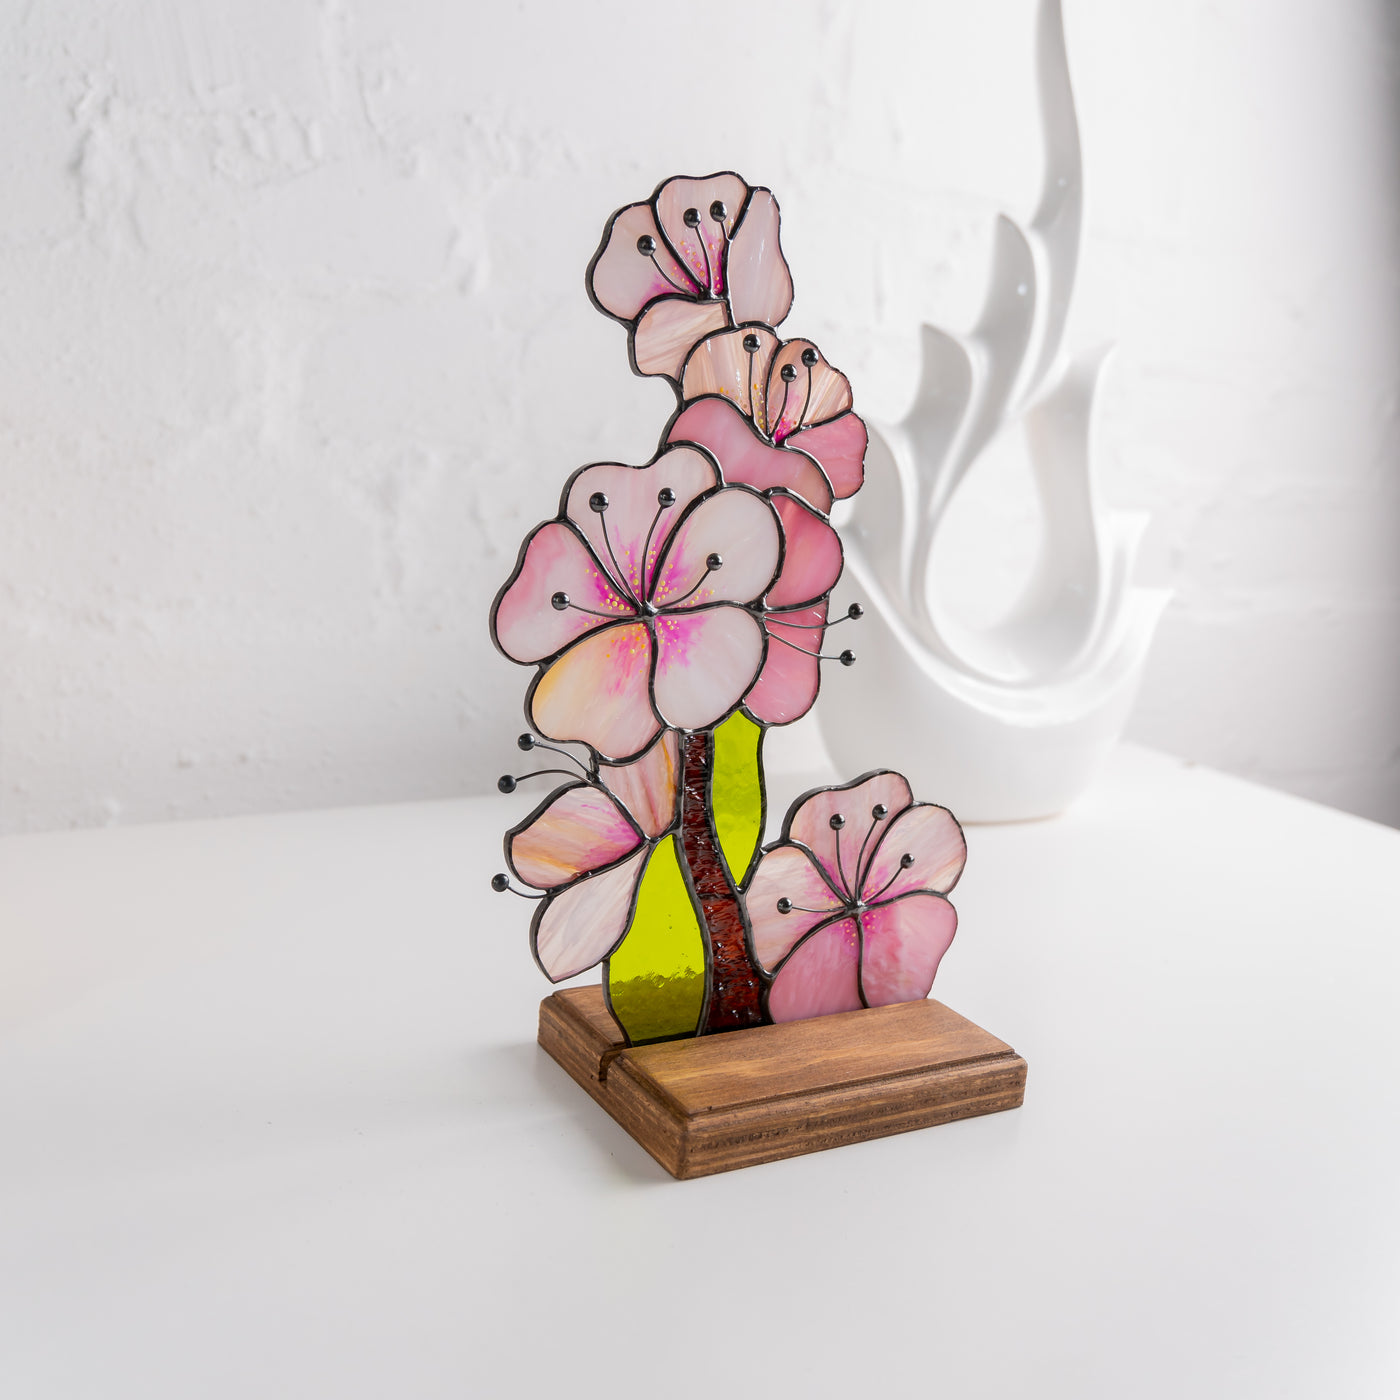 Sakura flower stained glass panel for table decor